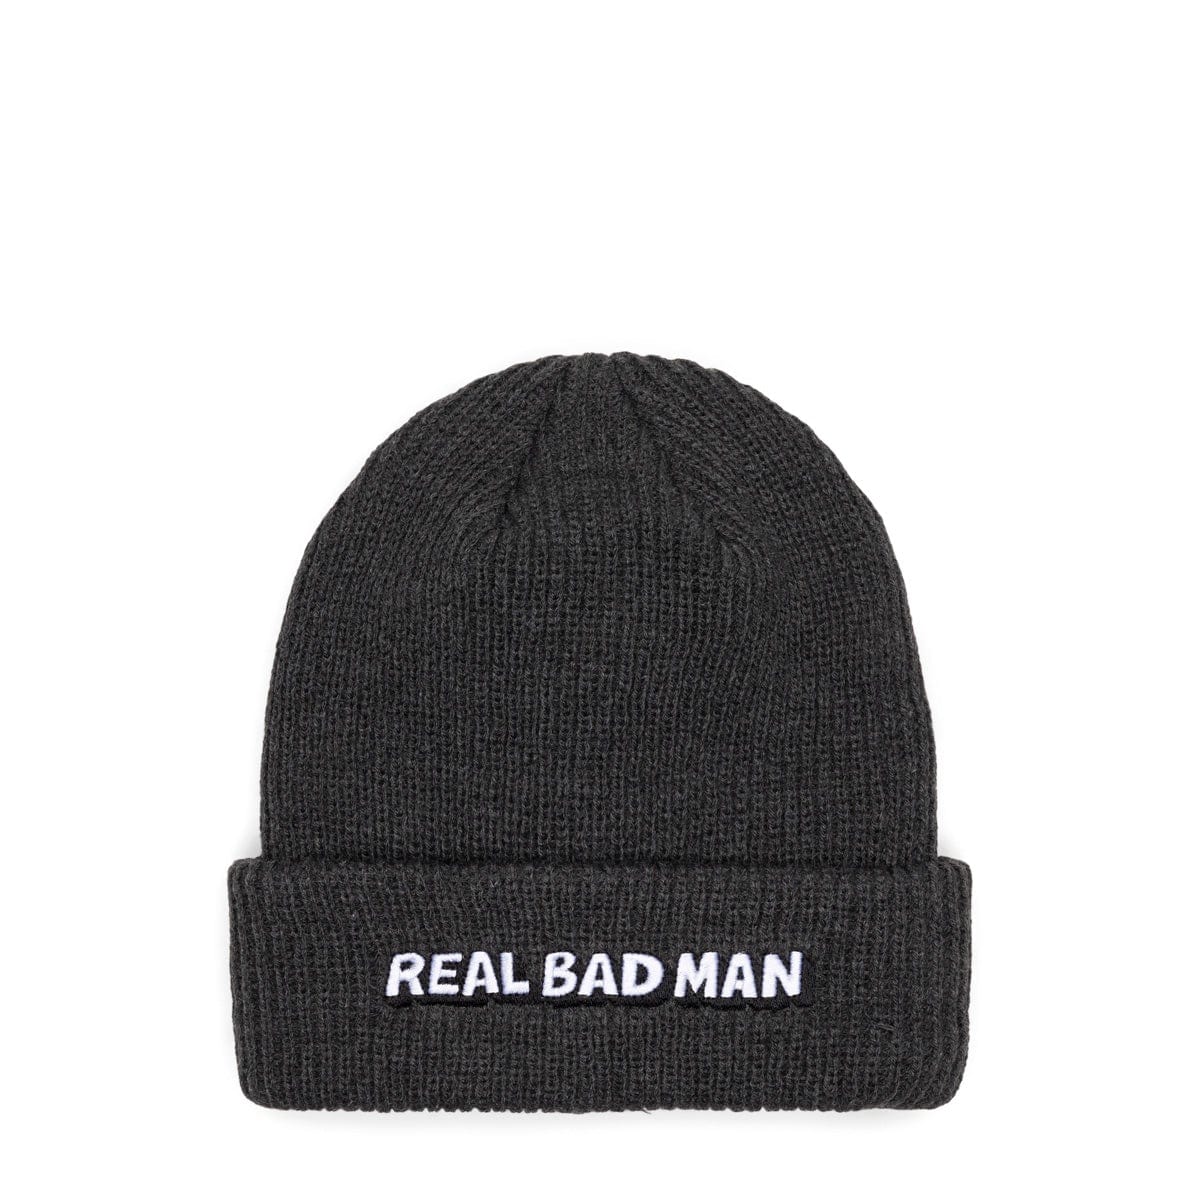 Real Bad Man Headwear OLIVE / O/S RBM CUFFED BEANIE